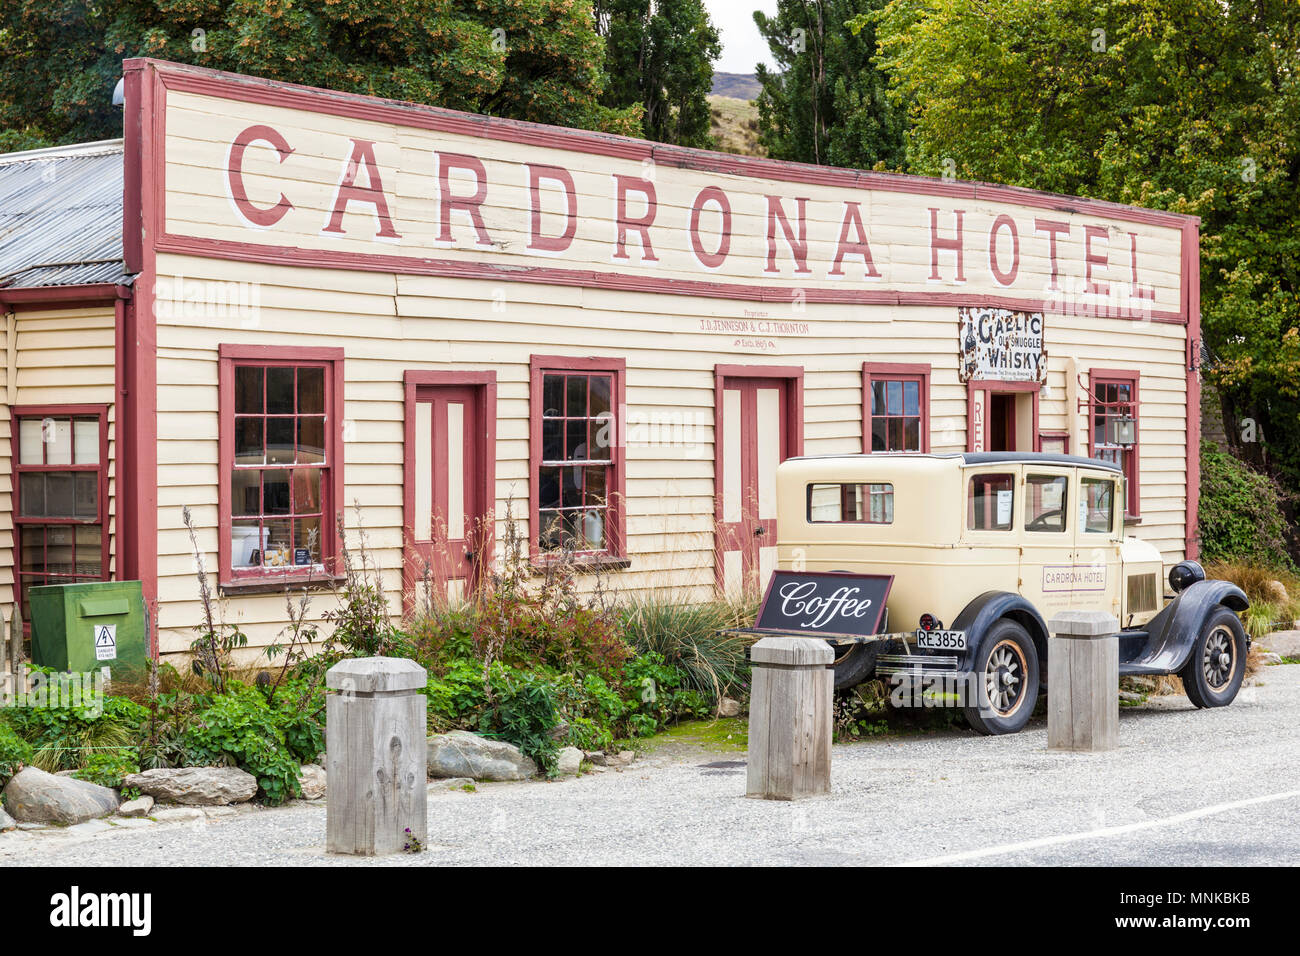 Nueva Zelandia cardrona hotel en una antigua ciudad goldrush Crown Range road cardrona, Isla del Sur, Nueva Zelanda Foto de stock